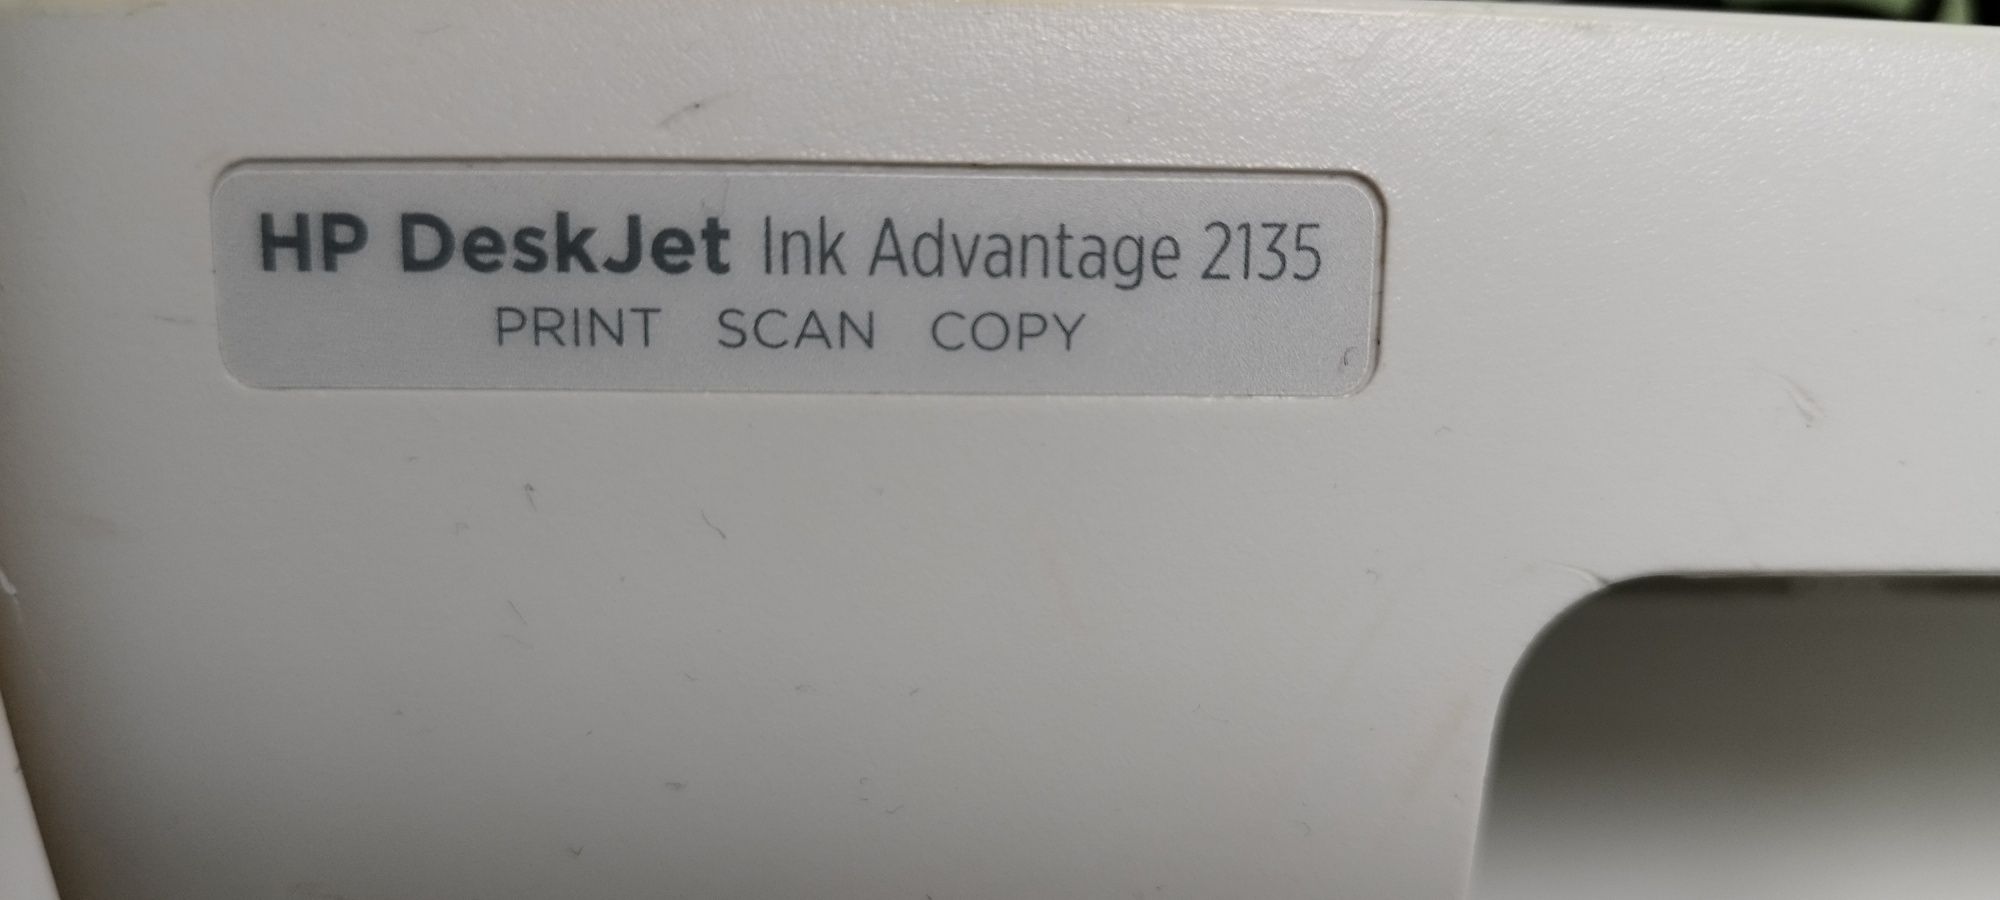 Vand imprimanta HP DeskJet Ink Advantage 2135